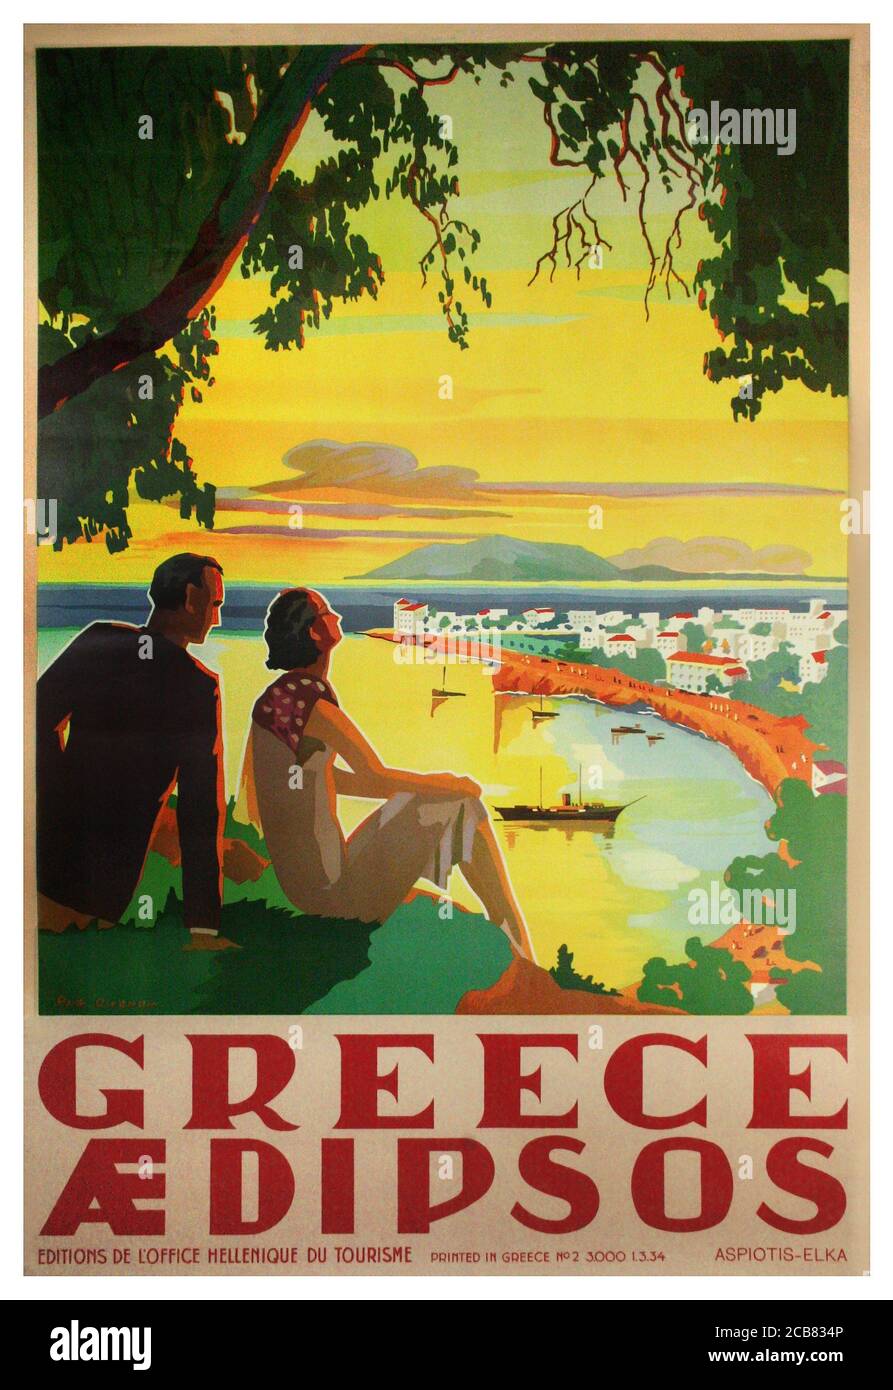 Anni '30 Vintage Greece Tourism Poster Greek Aeditsos Europe European Vintage Poster pubblicitario di viaggio dall'Ufficio Hellenique del Turismo Foto Stock